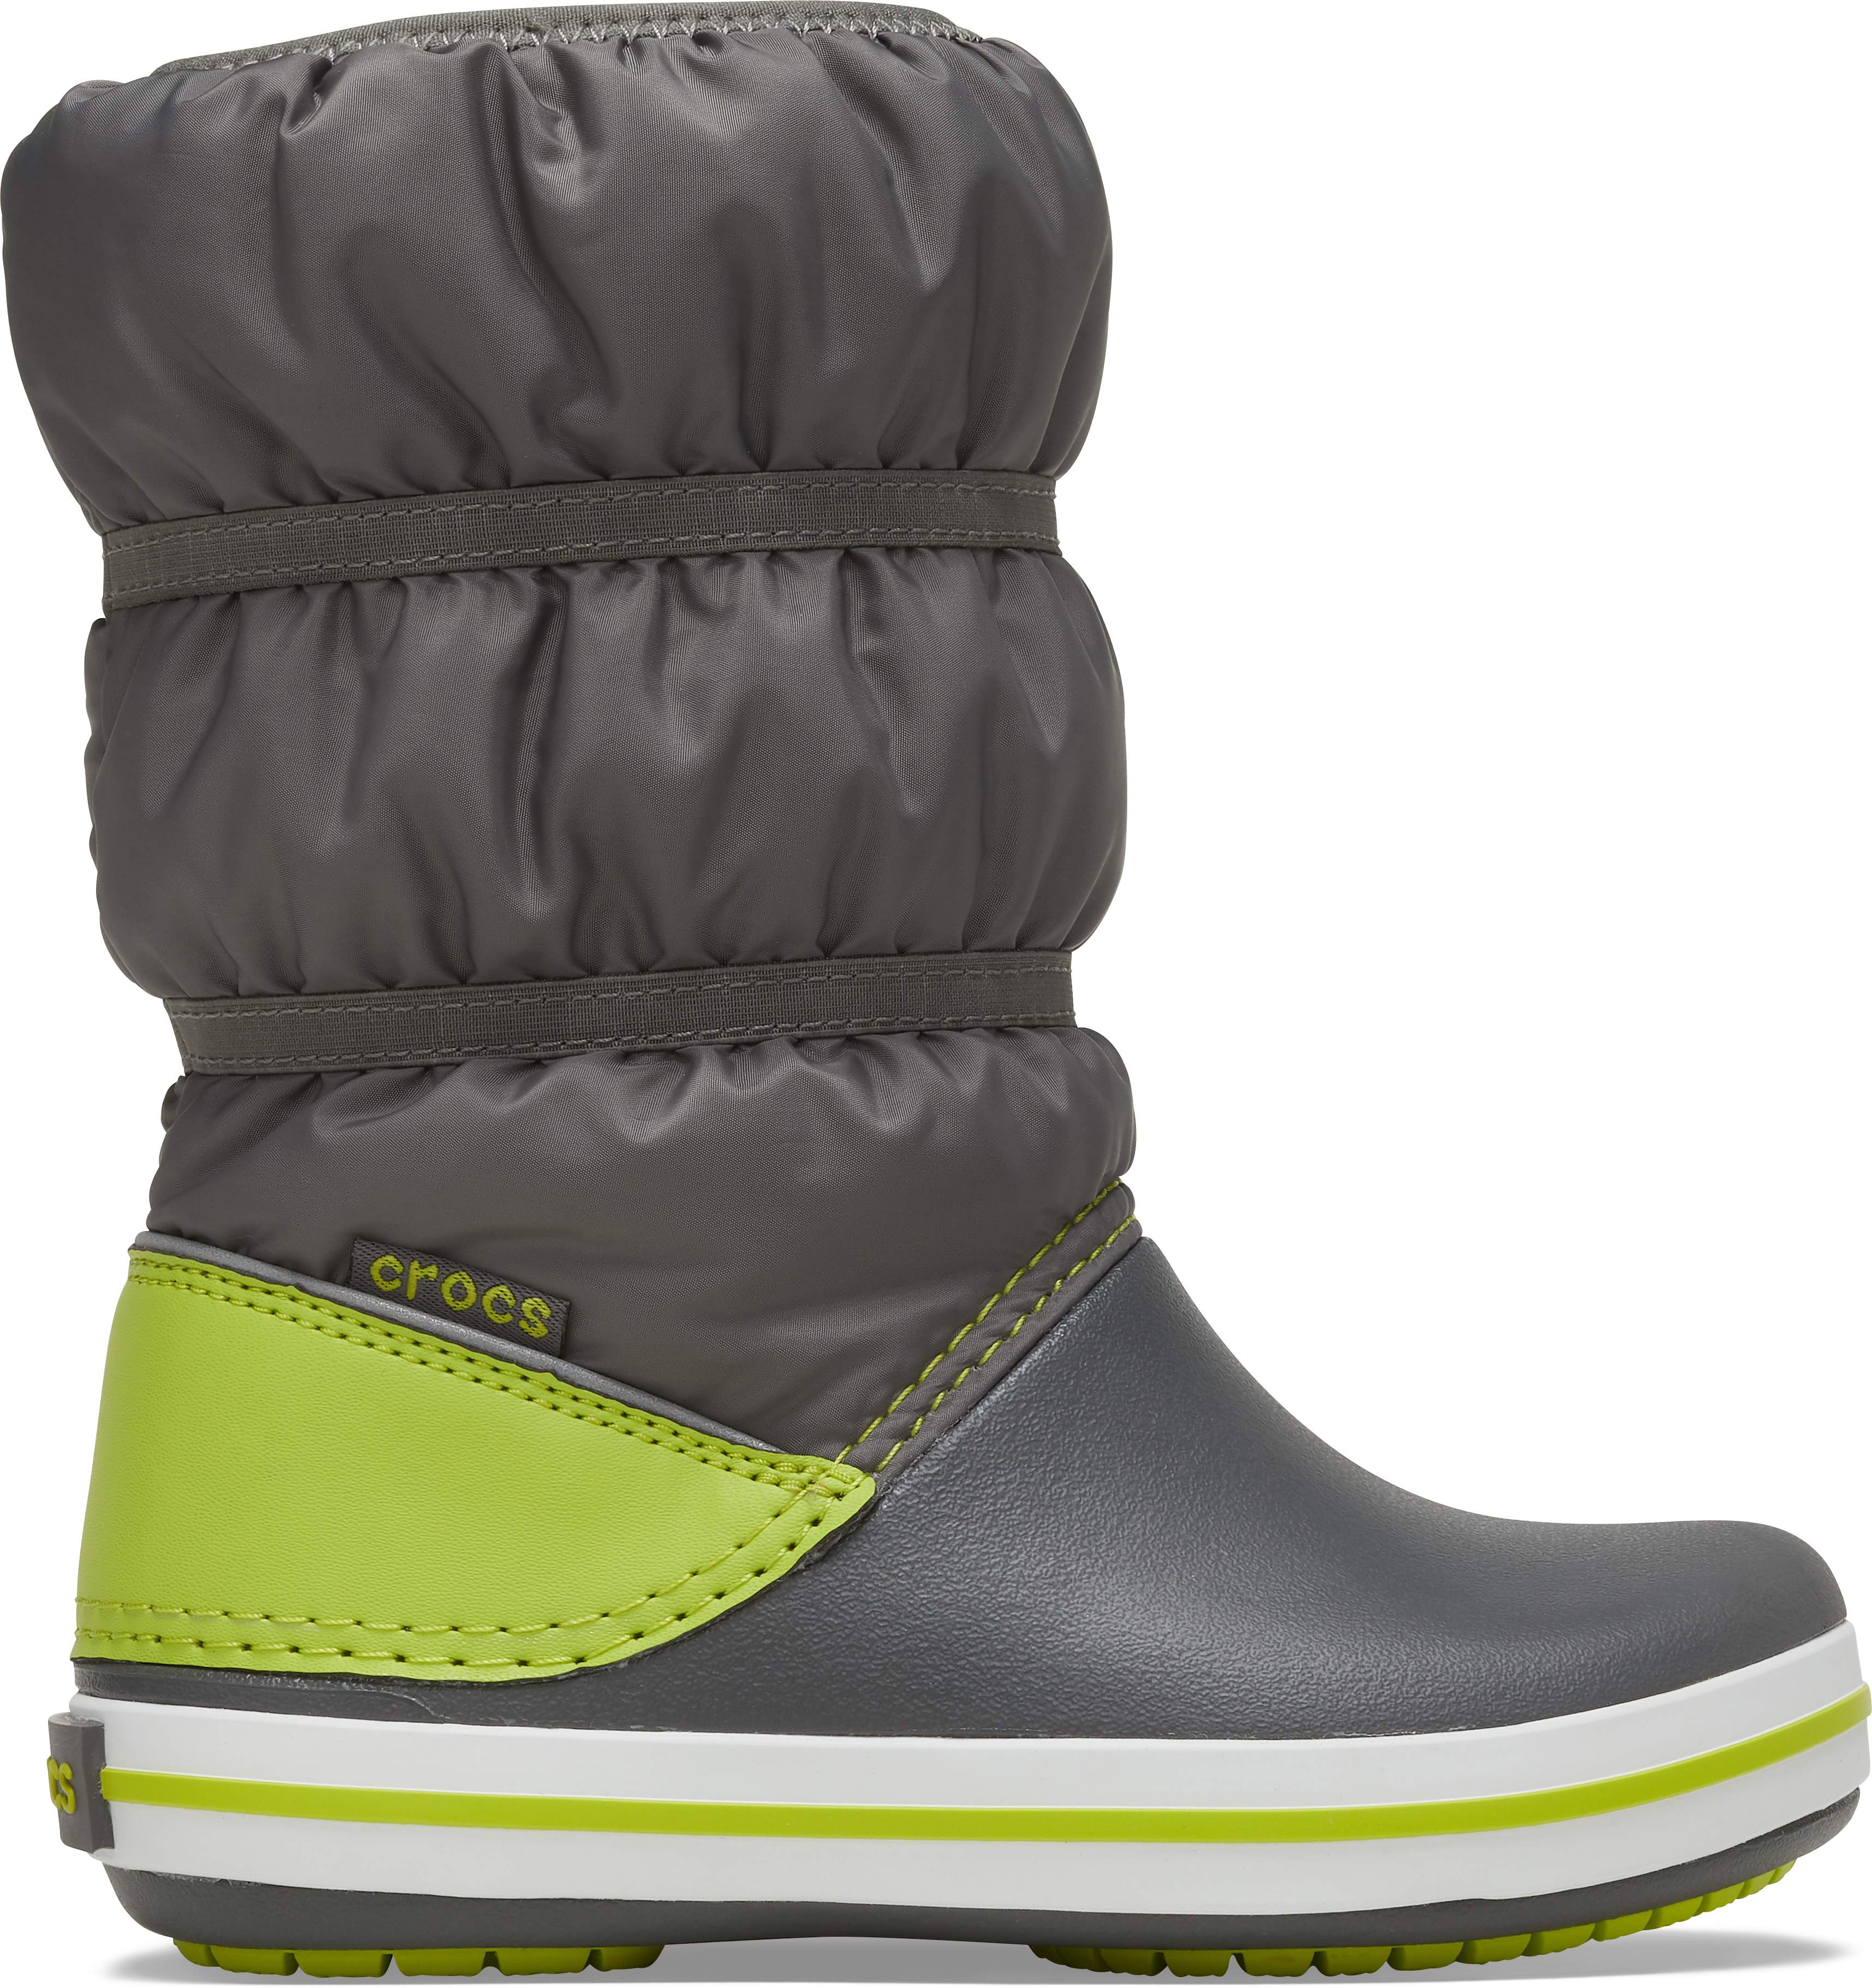 croc winter shoes